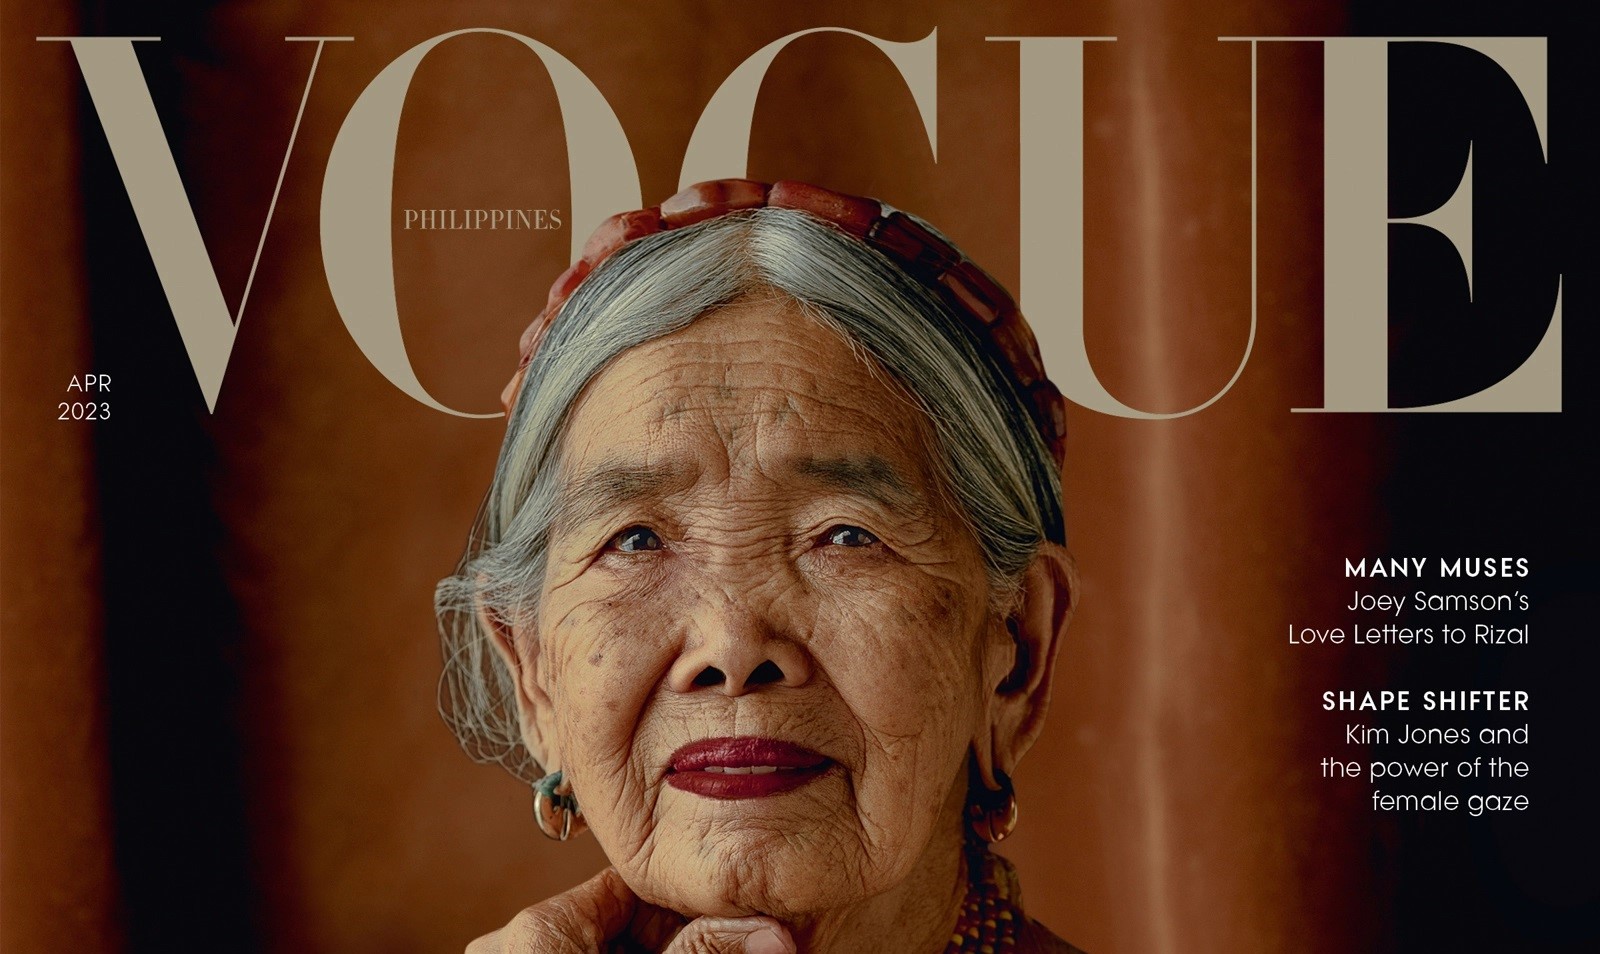 בת 106 מהפיליפינים היא דוגמנית השער המבוגרת ביותר של Vogue אי פעם